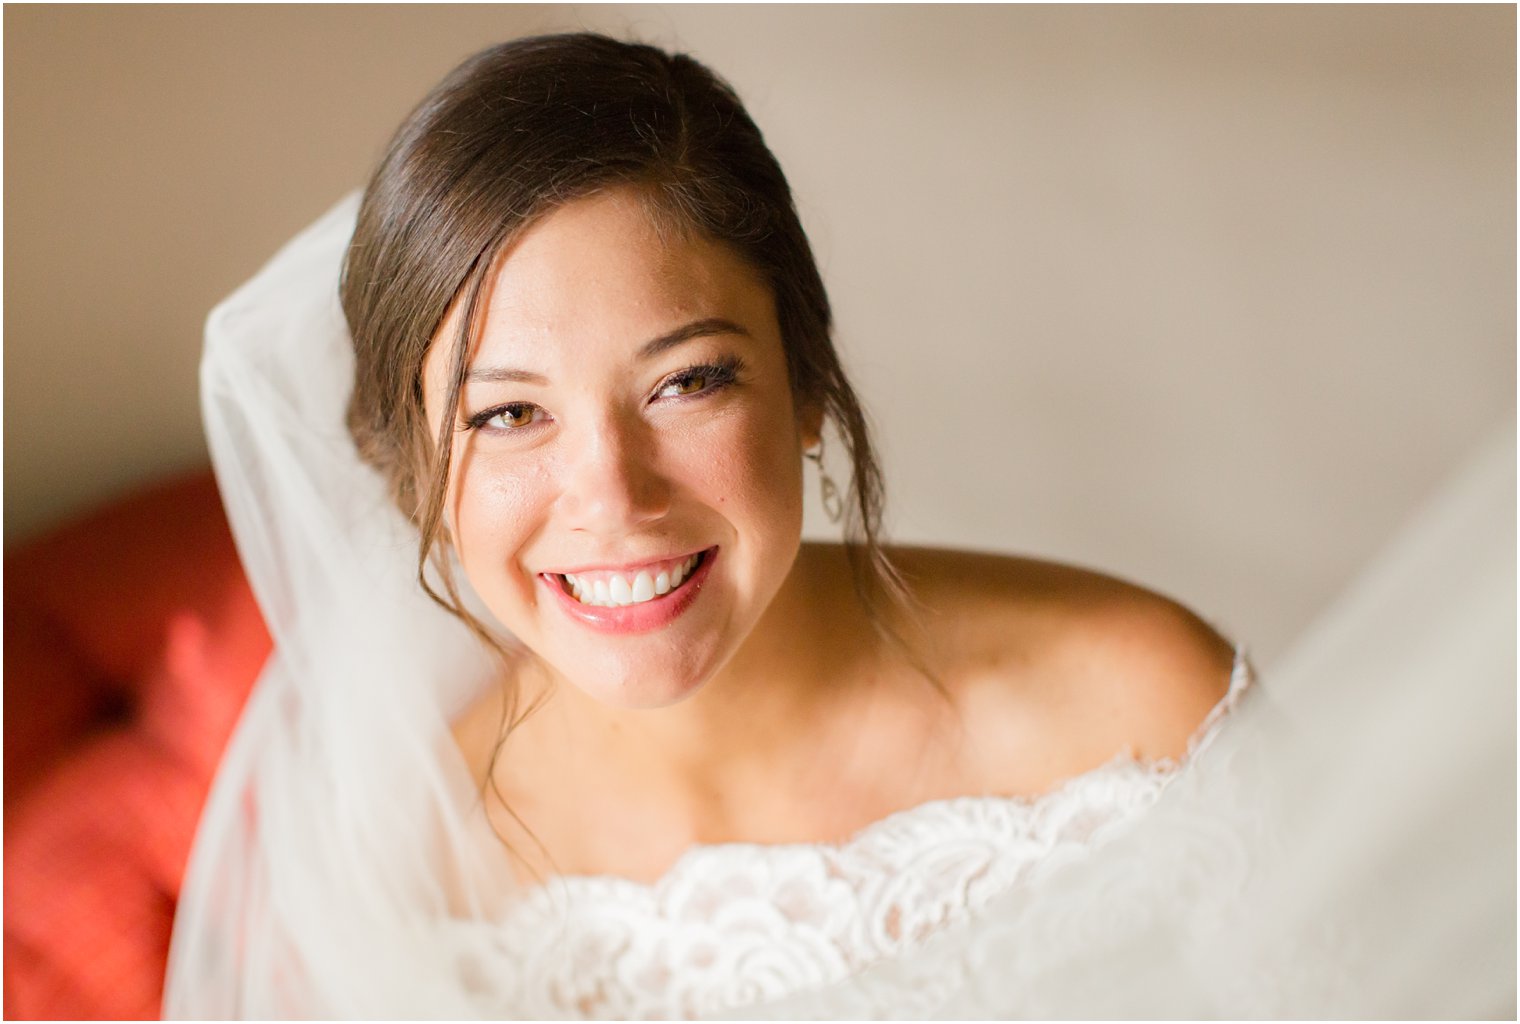 Bridal Portrait | Pleasantdale Wedding Photos by Idalia Photography